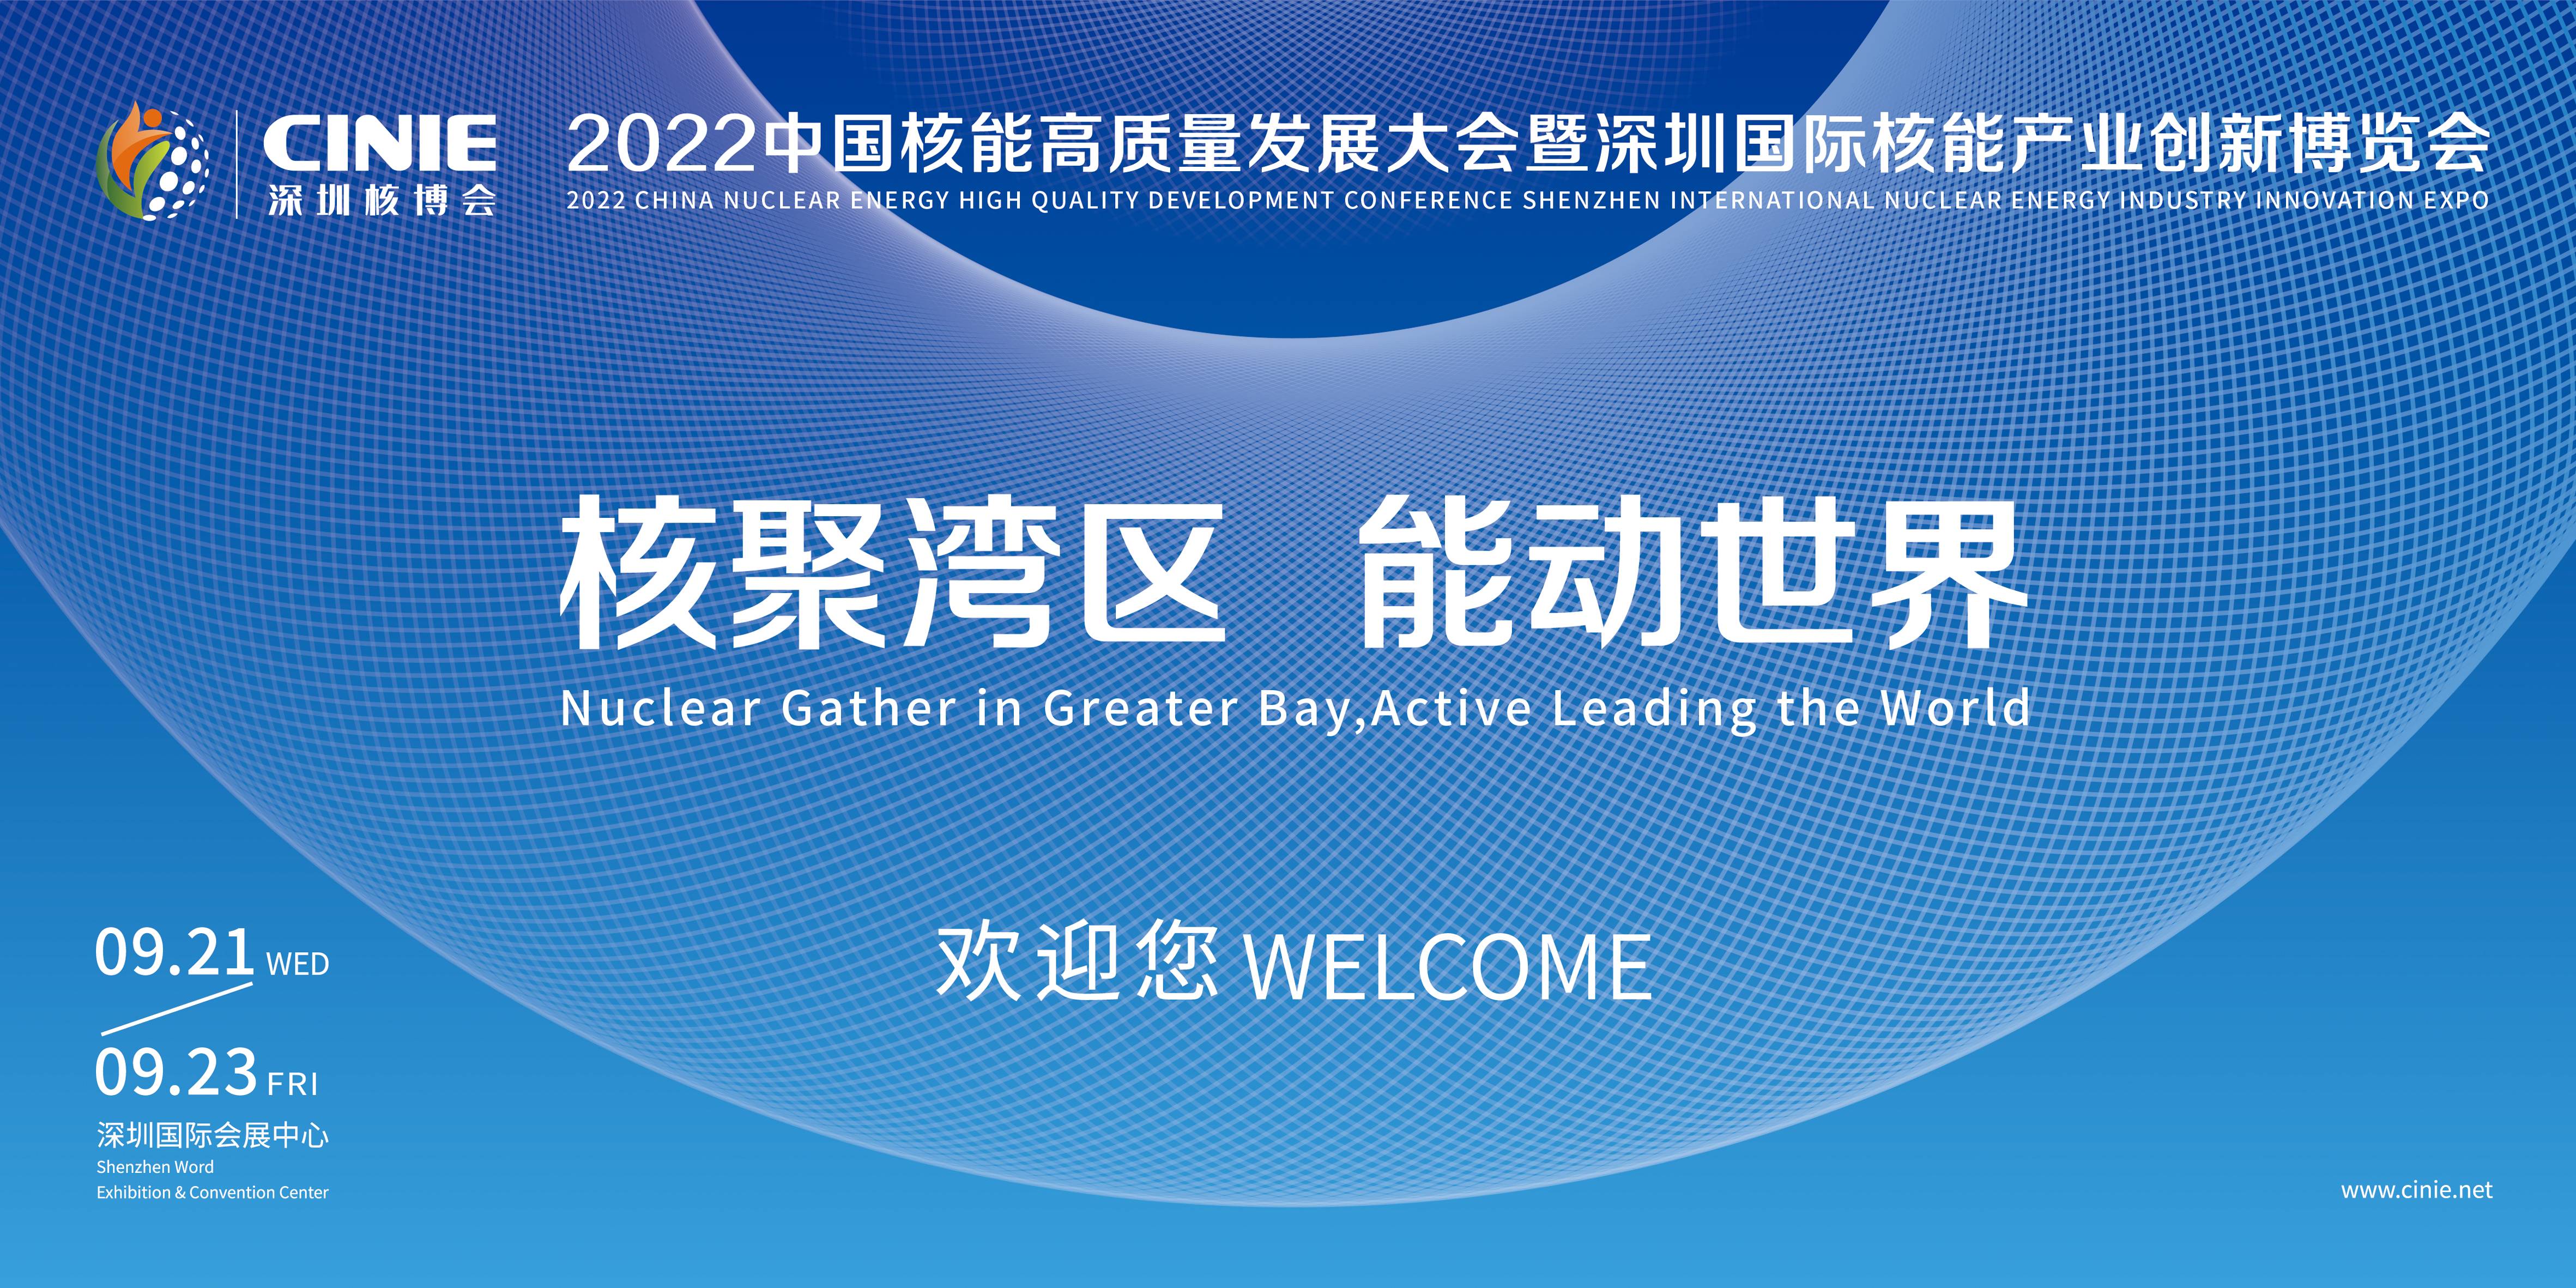 關于召開2022年中國核能高質量發展大會的通知